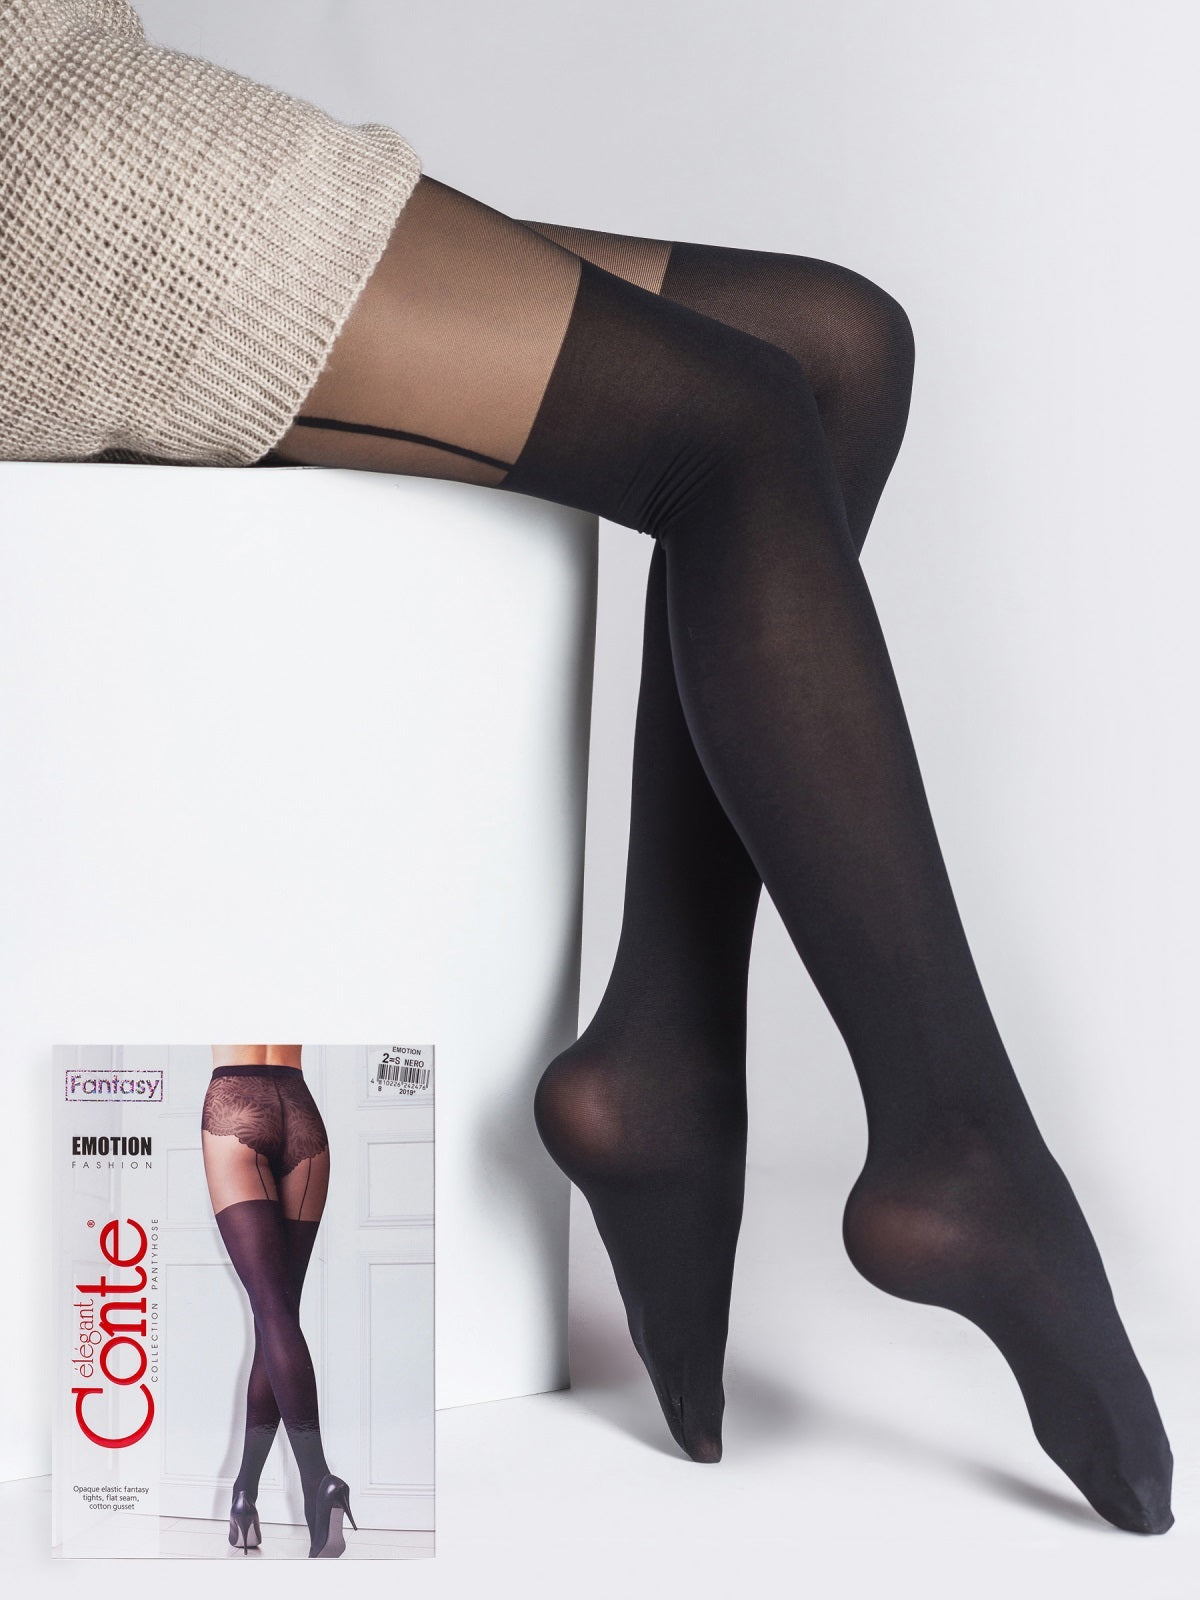 Črne najlonke v videzu nogavic za pas Conte Elegant hlačne nogavice v videzu nadkolenk s pasom Emotion